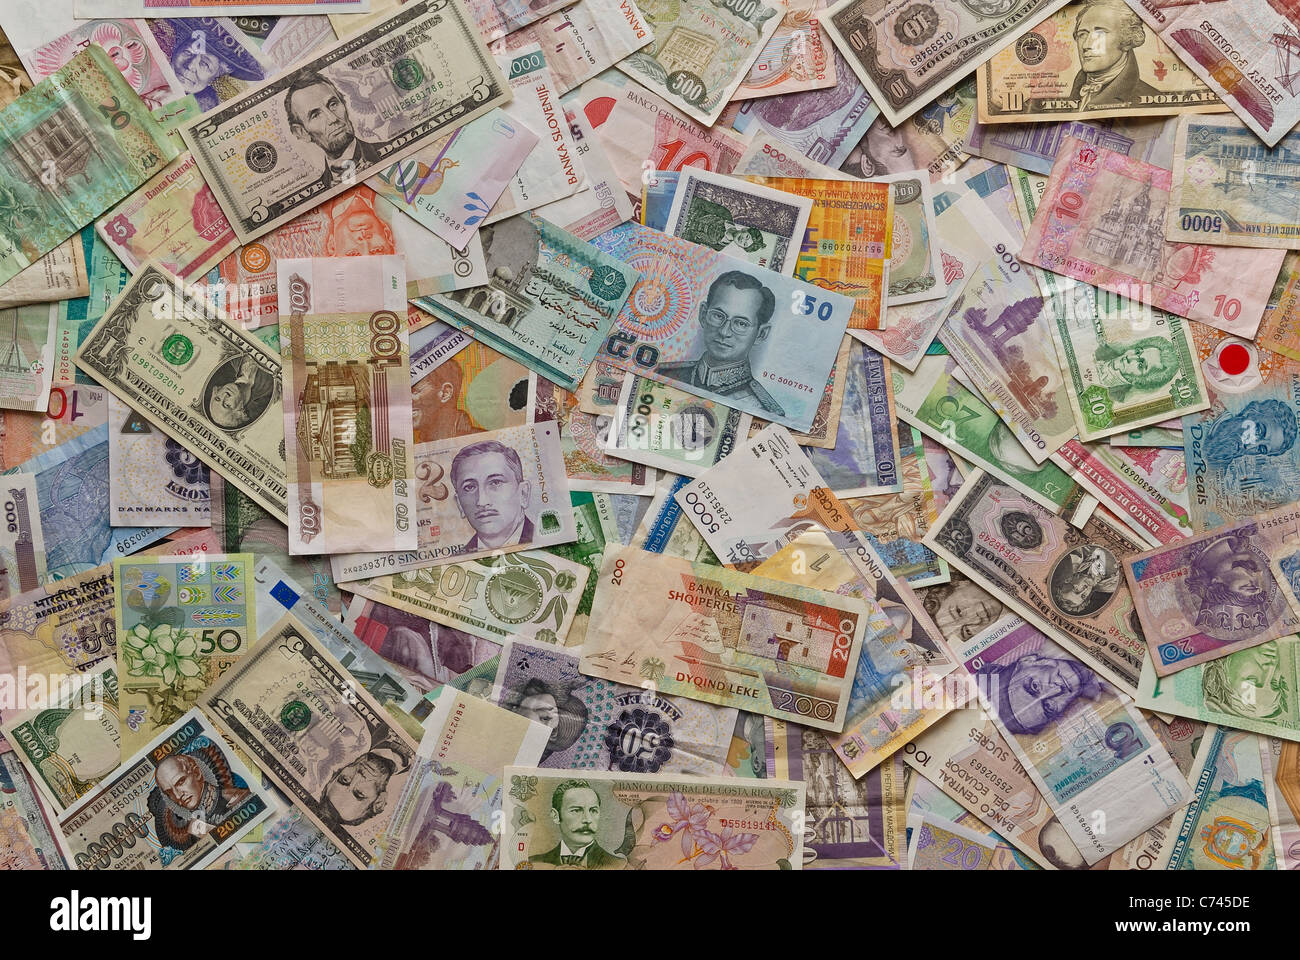 Bargeld aus der ganzen Welt in ein Chaos. Bargeld von rund um den Globus miteinander vermischt, in die gleiche Weise wie das Finanzsystem. Stockfoto